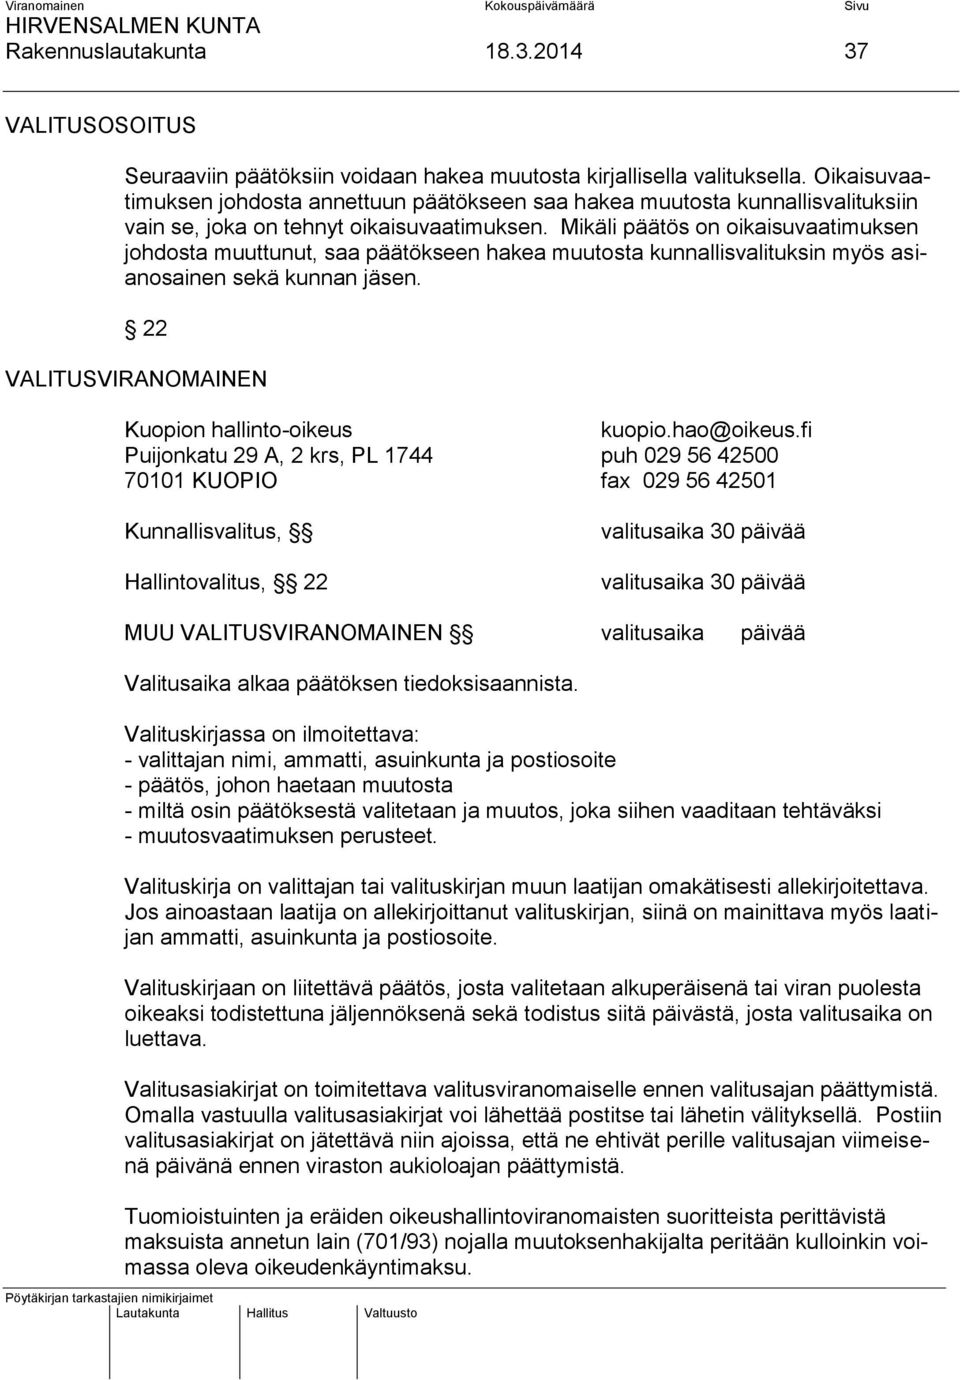 Mikäli päätös on oikaisuvaatimuksen johdosta muuttunut, saa päätökseen hakea muutosta kunnallisvalituksin myös asianosainen sekä kunnan jäsen. 22 VALITUSVIRANOMAINEN Kuopion hallinto-oikeus kuopio.